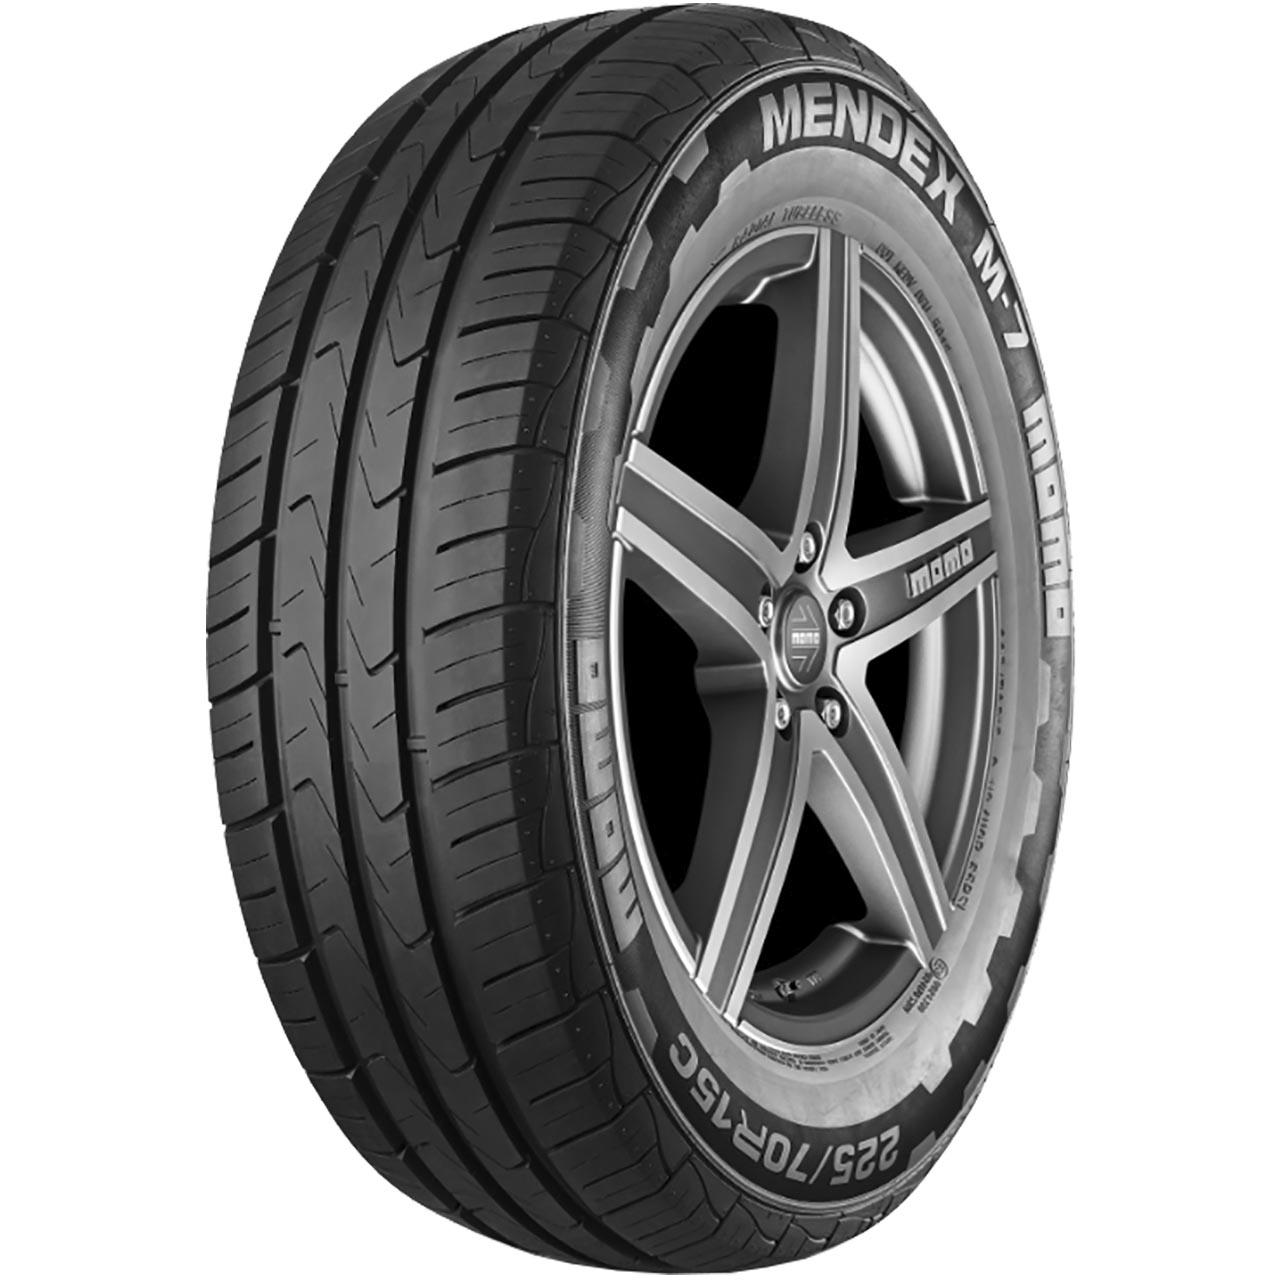 Momo Tire M7 Mendex 215/75R16C 116/114R 10PR